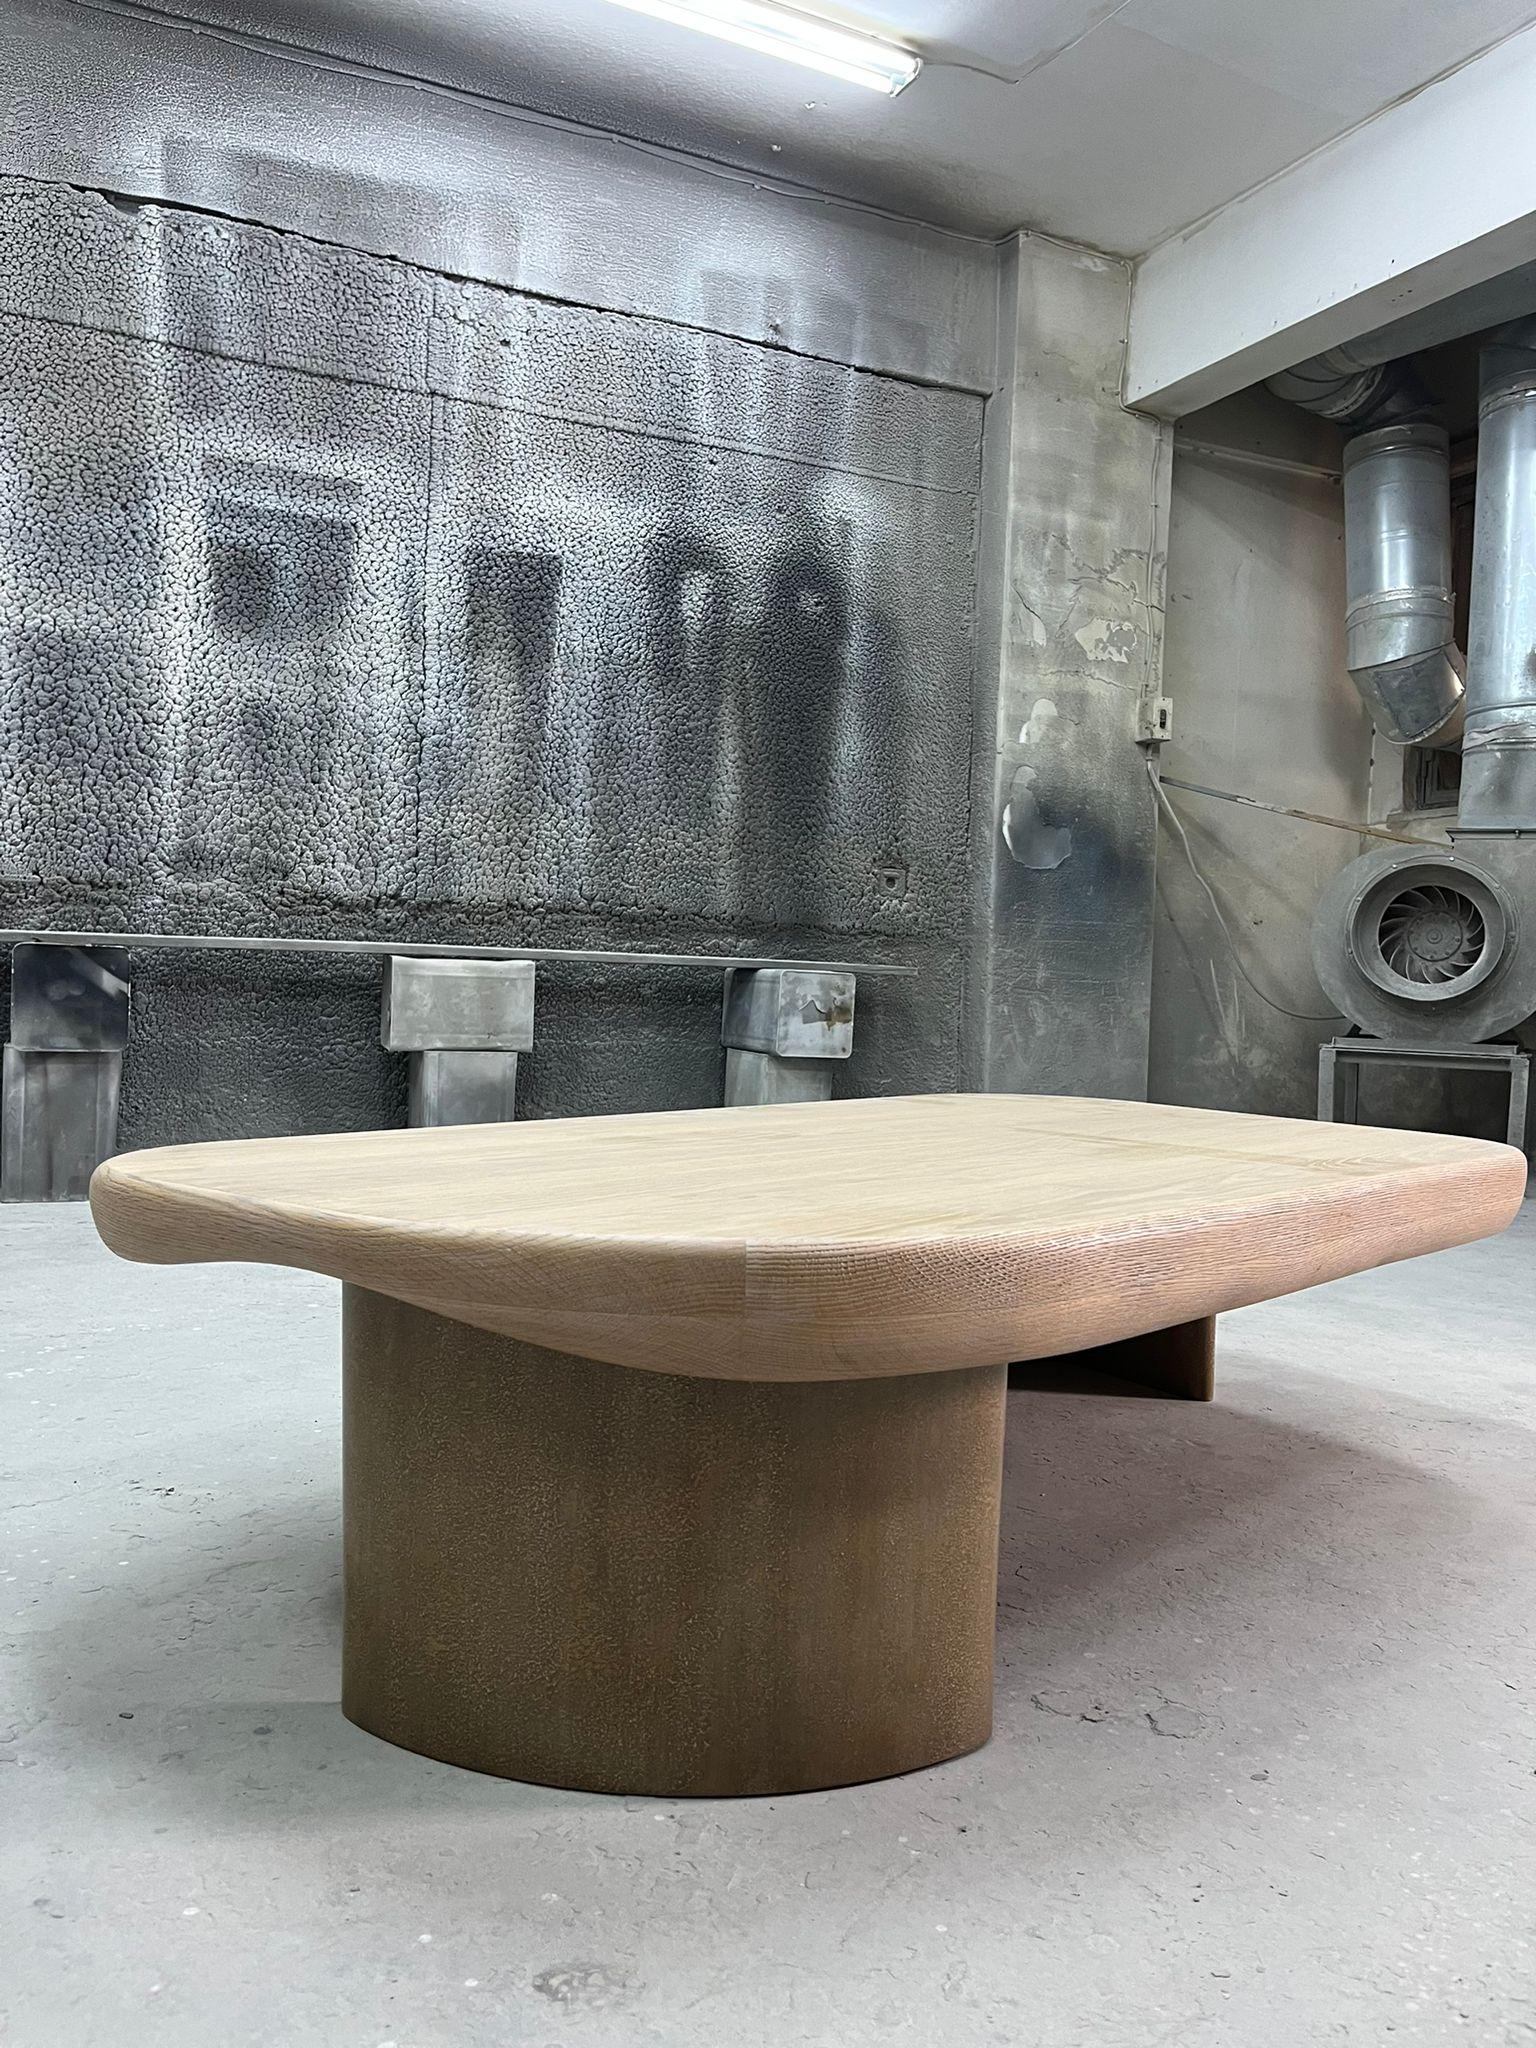 Table basse Ocean d'Ekin Varon
Dimensions : D 85 x L 160 x H 38 cm. 
MATERIAL : Chêne massif, placage de chêne et bois avec une finition laquée brillante à motifs.

Les dimensions et les matériaux peuvent être modifiés sur demande. Veuillez nous